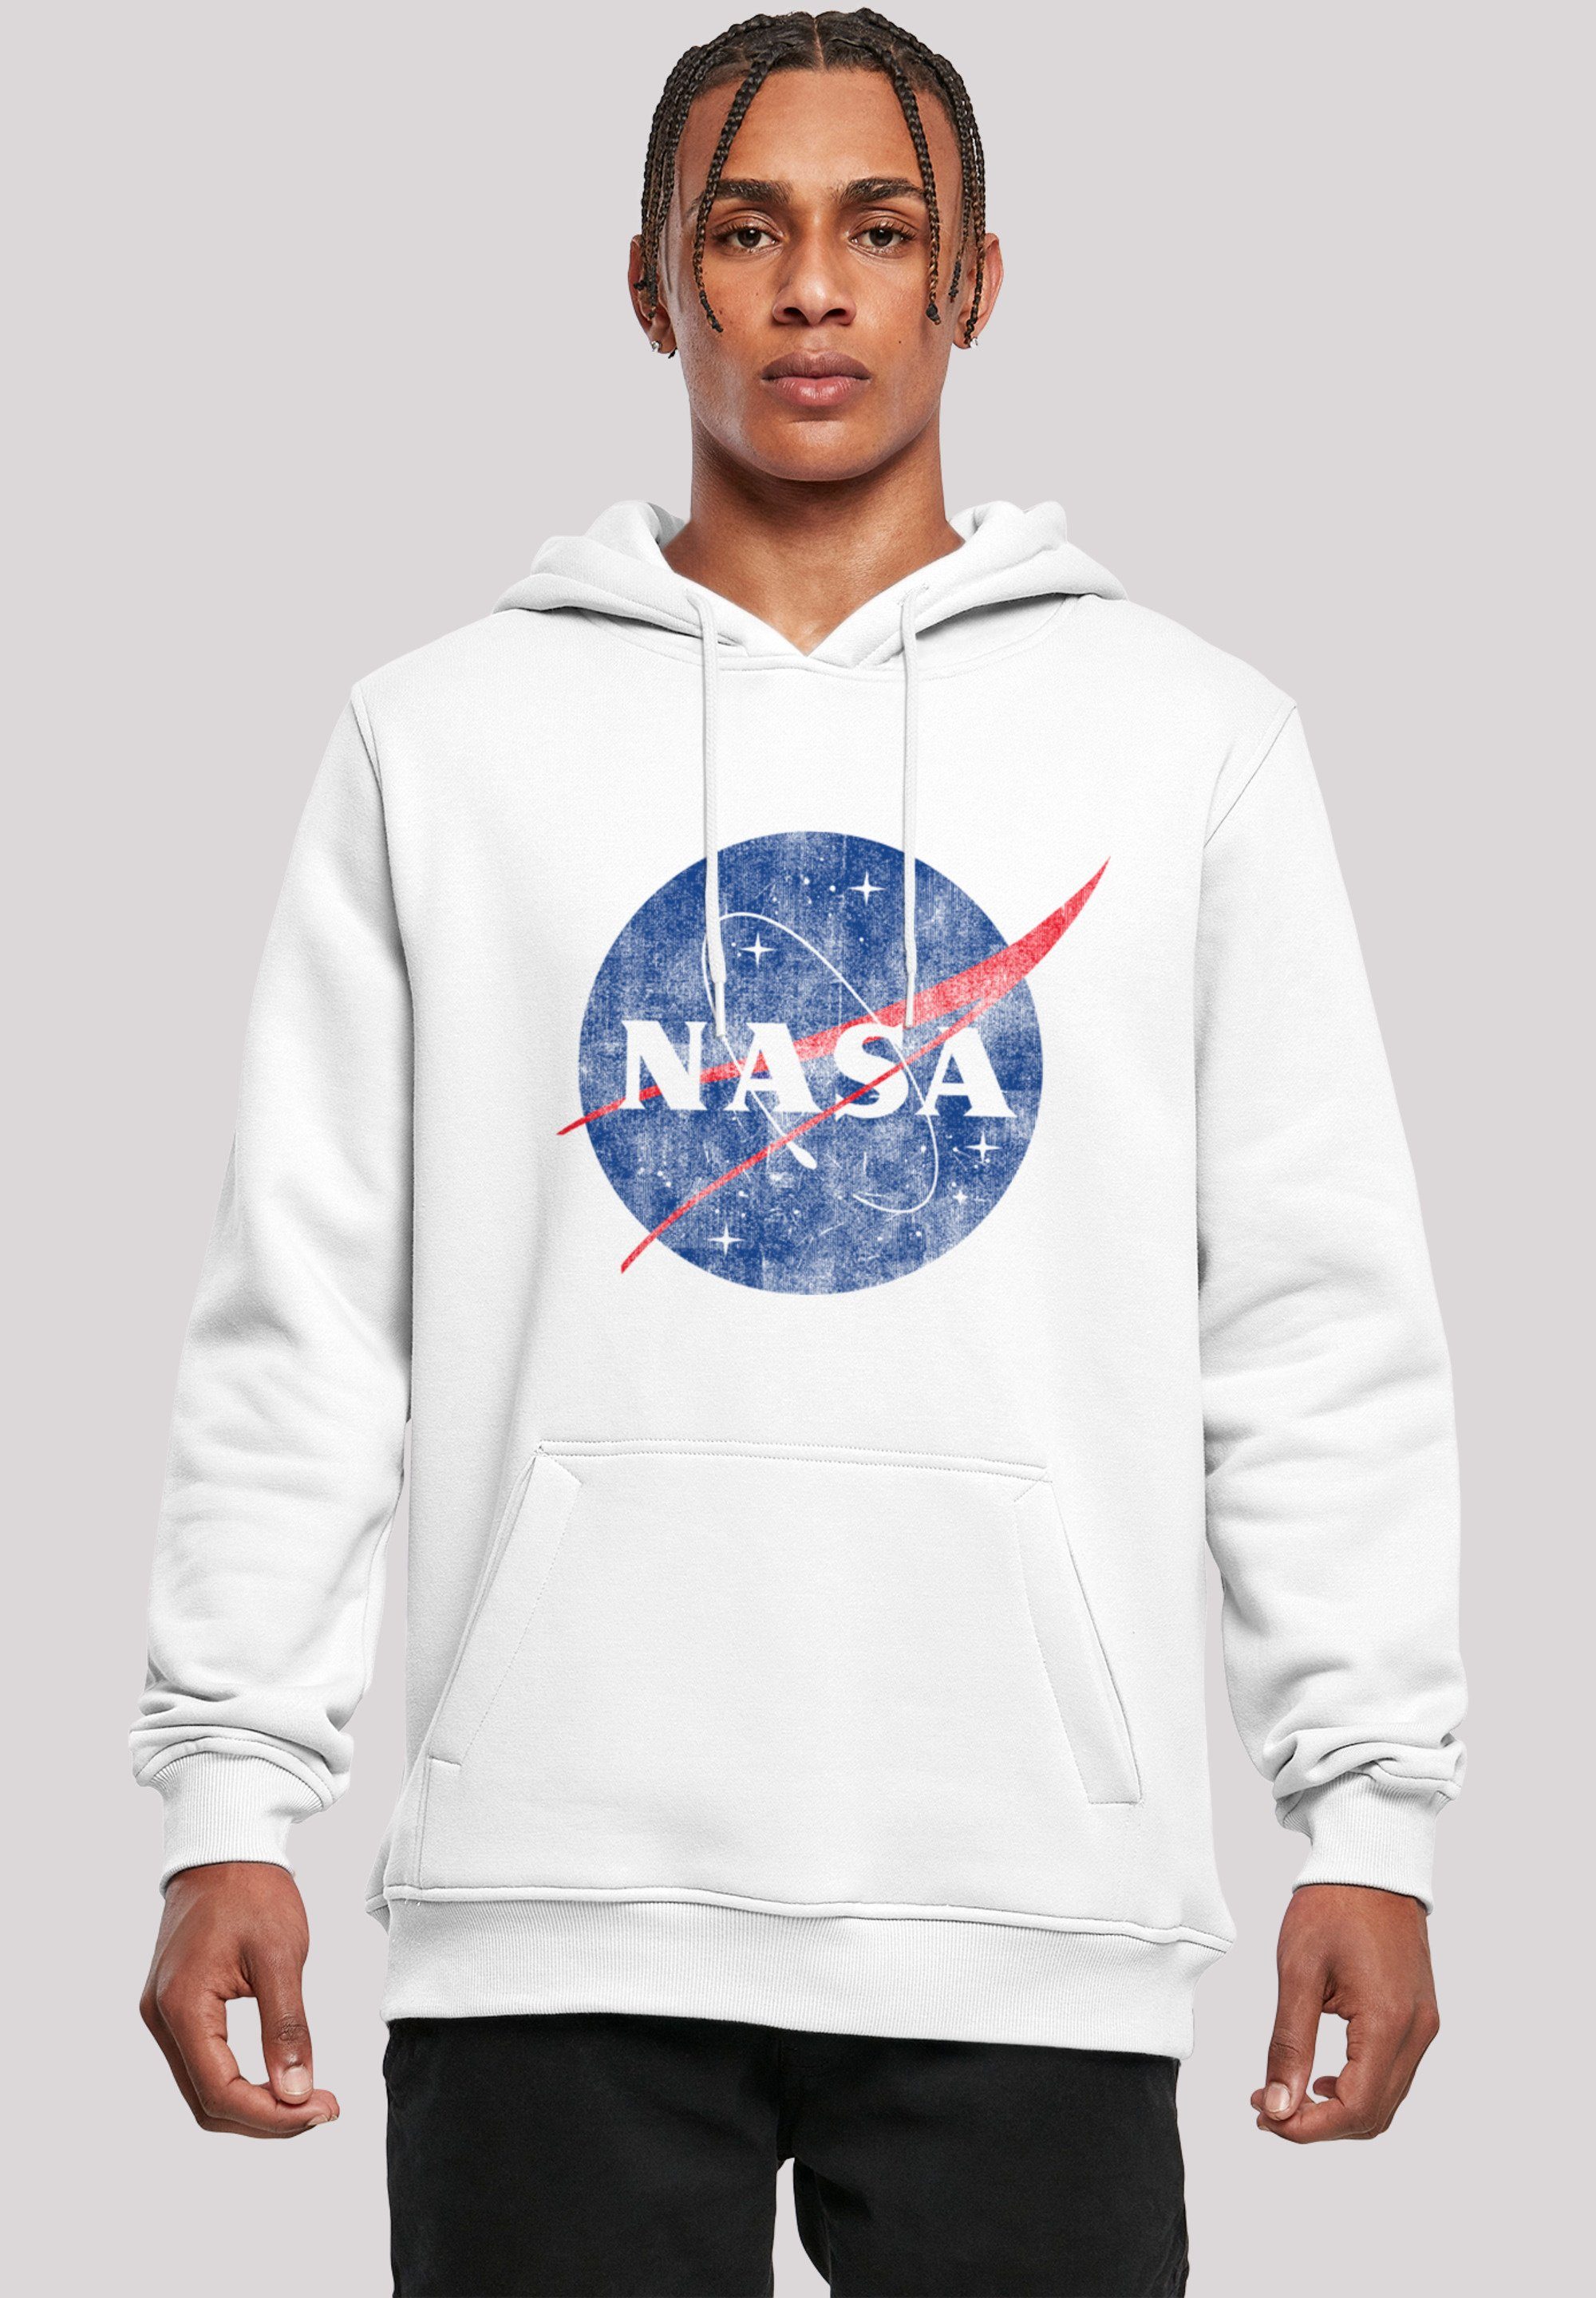 geräumige NASA Logo Classic Verstellbare Insignia Merch,Slim-Fit,Kapuzenpullover,Bedruckt, Sweatshirt F4NT4STIC Distressed Kapuze Kängurutasche und Herren,Premium